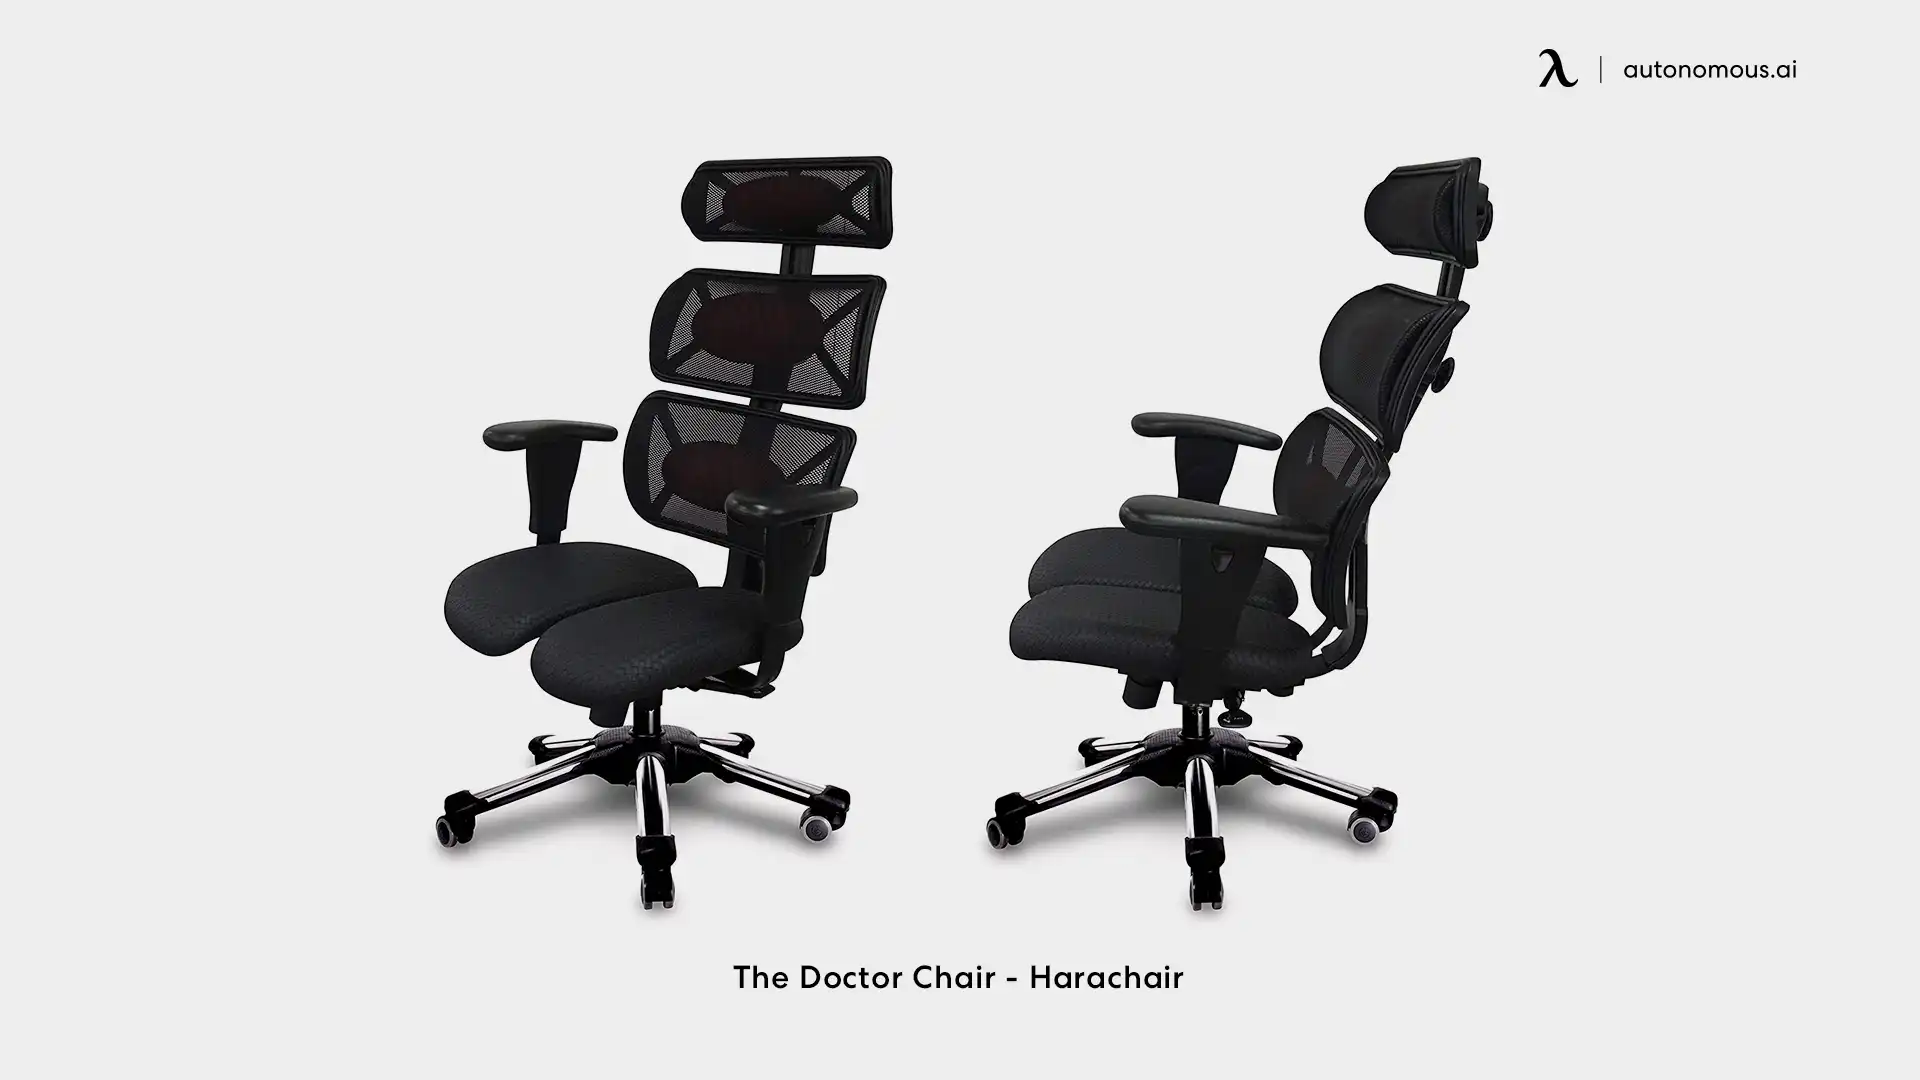 The doctor chair - Harachair